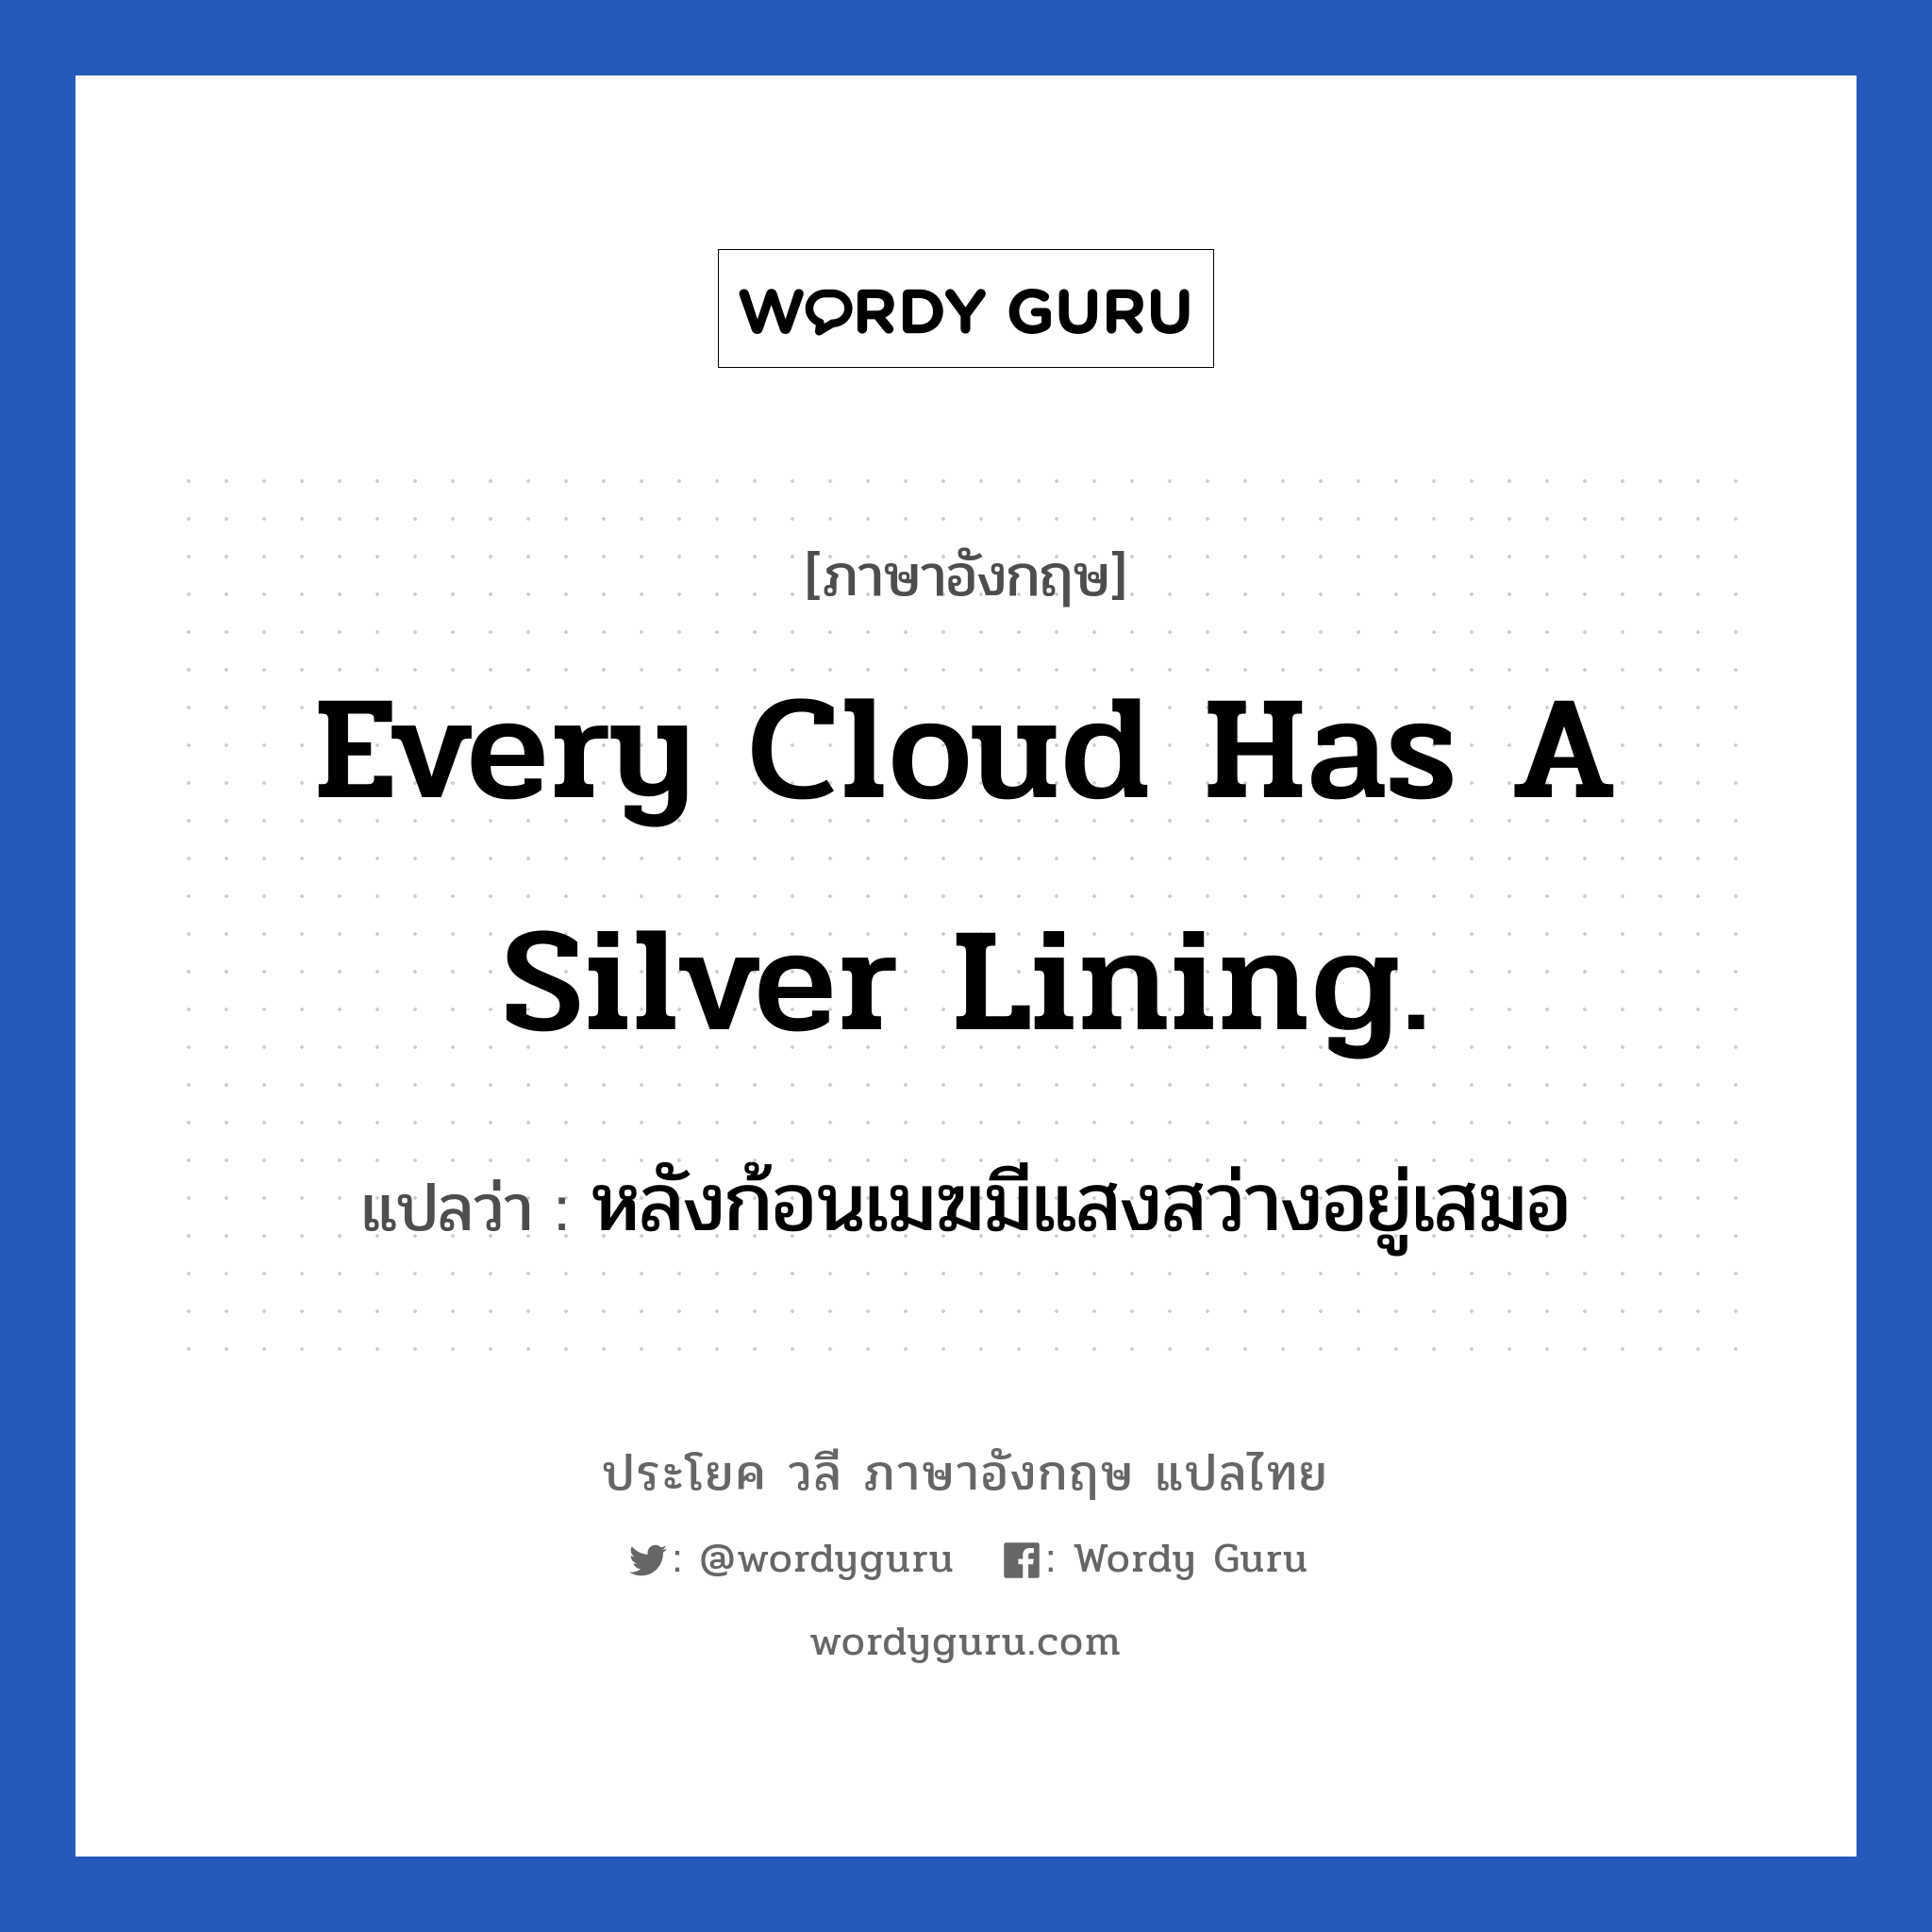 Every cloud has a silver lining. แปลว่า?, วลีภาษาอังกฤษ Every cloud has a silver lining. แปลว่า หลังก้อนเมฆมีแสงสว่างอยู่เสมอ ย่อมมีสิ่งดี ๆ ตามหลังจากสิ่งที่ไม่ดีเสมอ หมวด ให้กำลังใจ